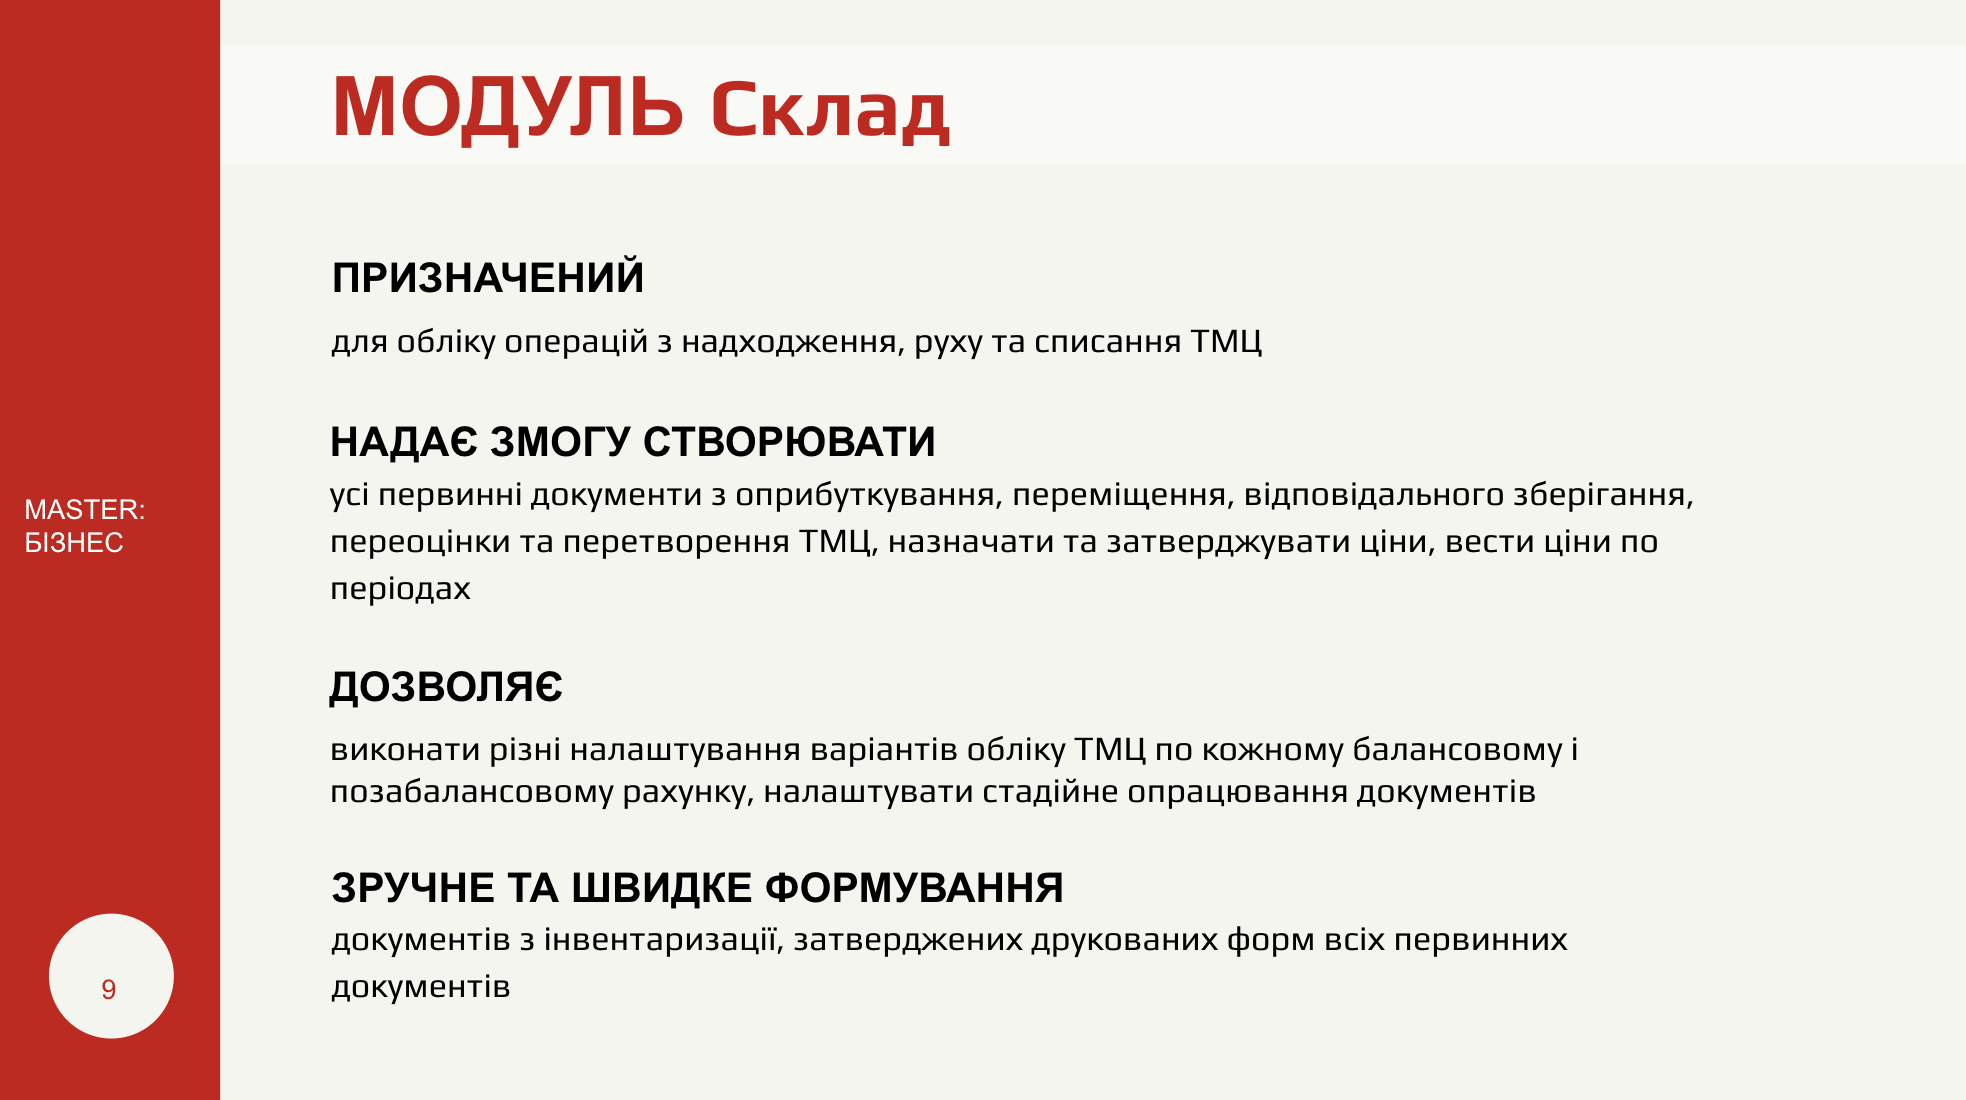 Український аналог 1С для ведення повного обліку